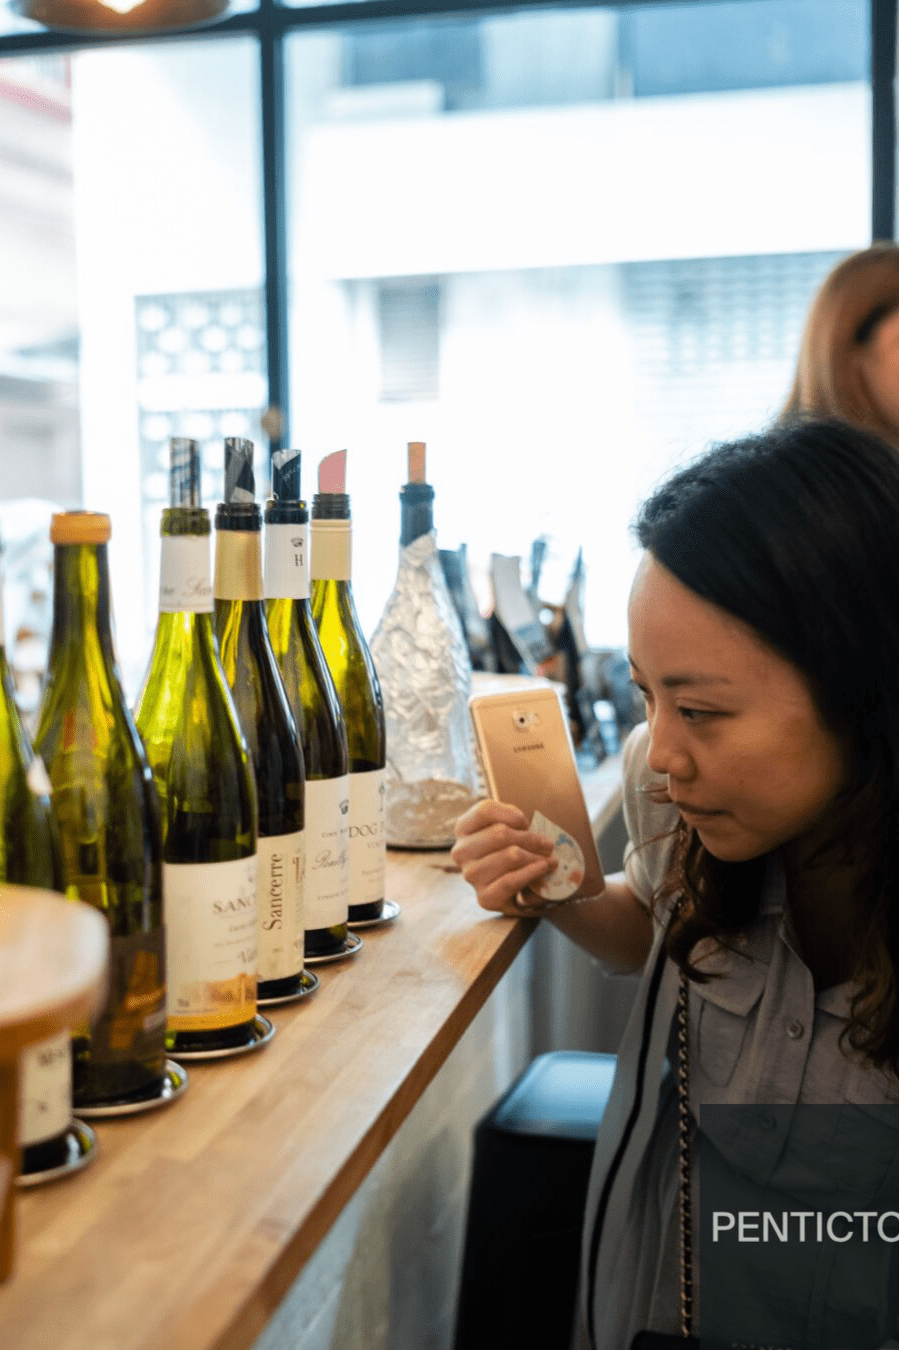 Secrets of Sauvignon Blanc Masterclass 【魅力長相思】法國五月美食薈之品酒大師班 - PENTICTON